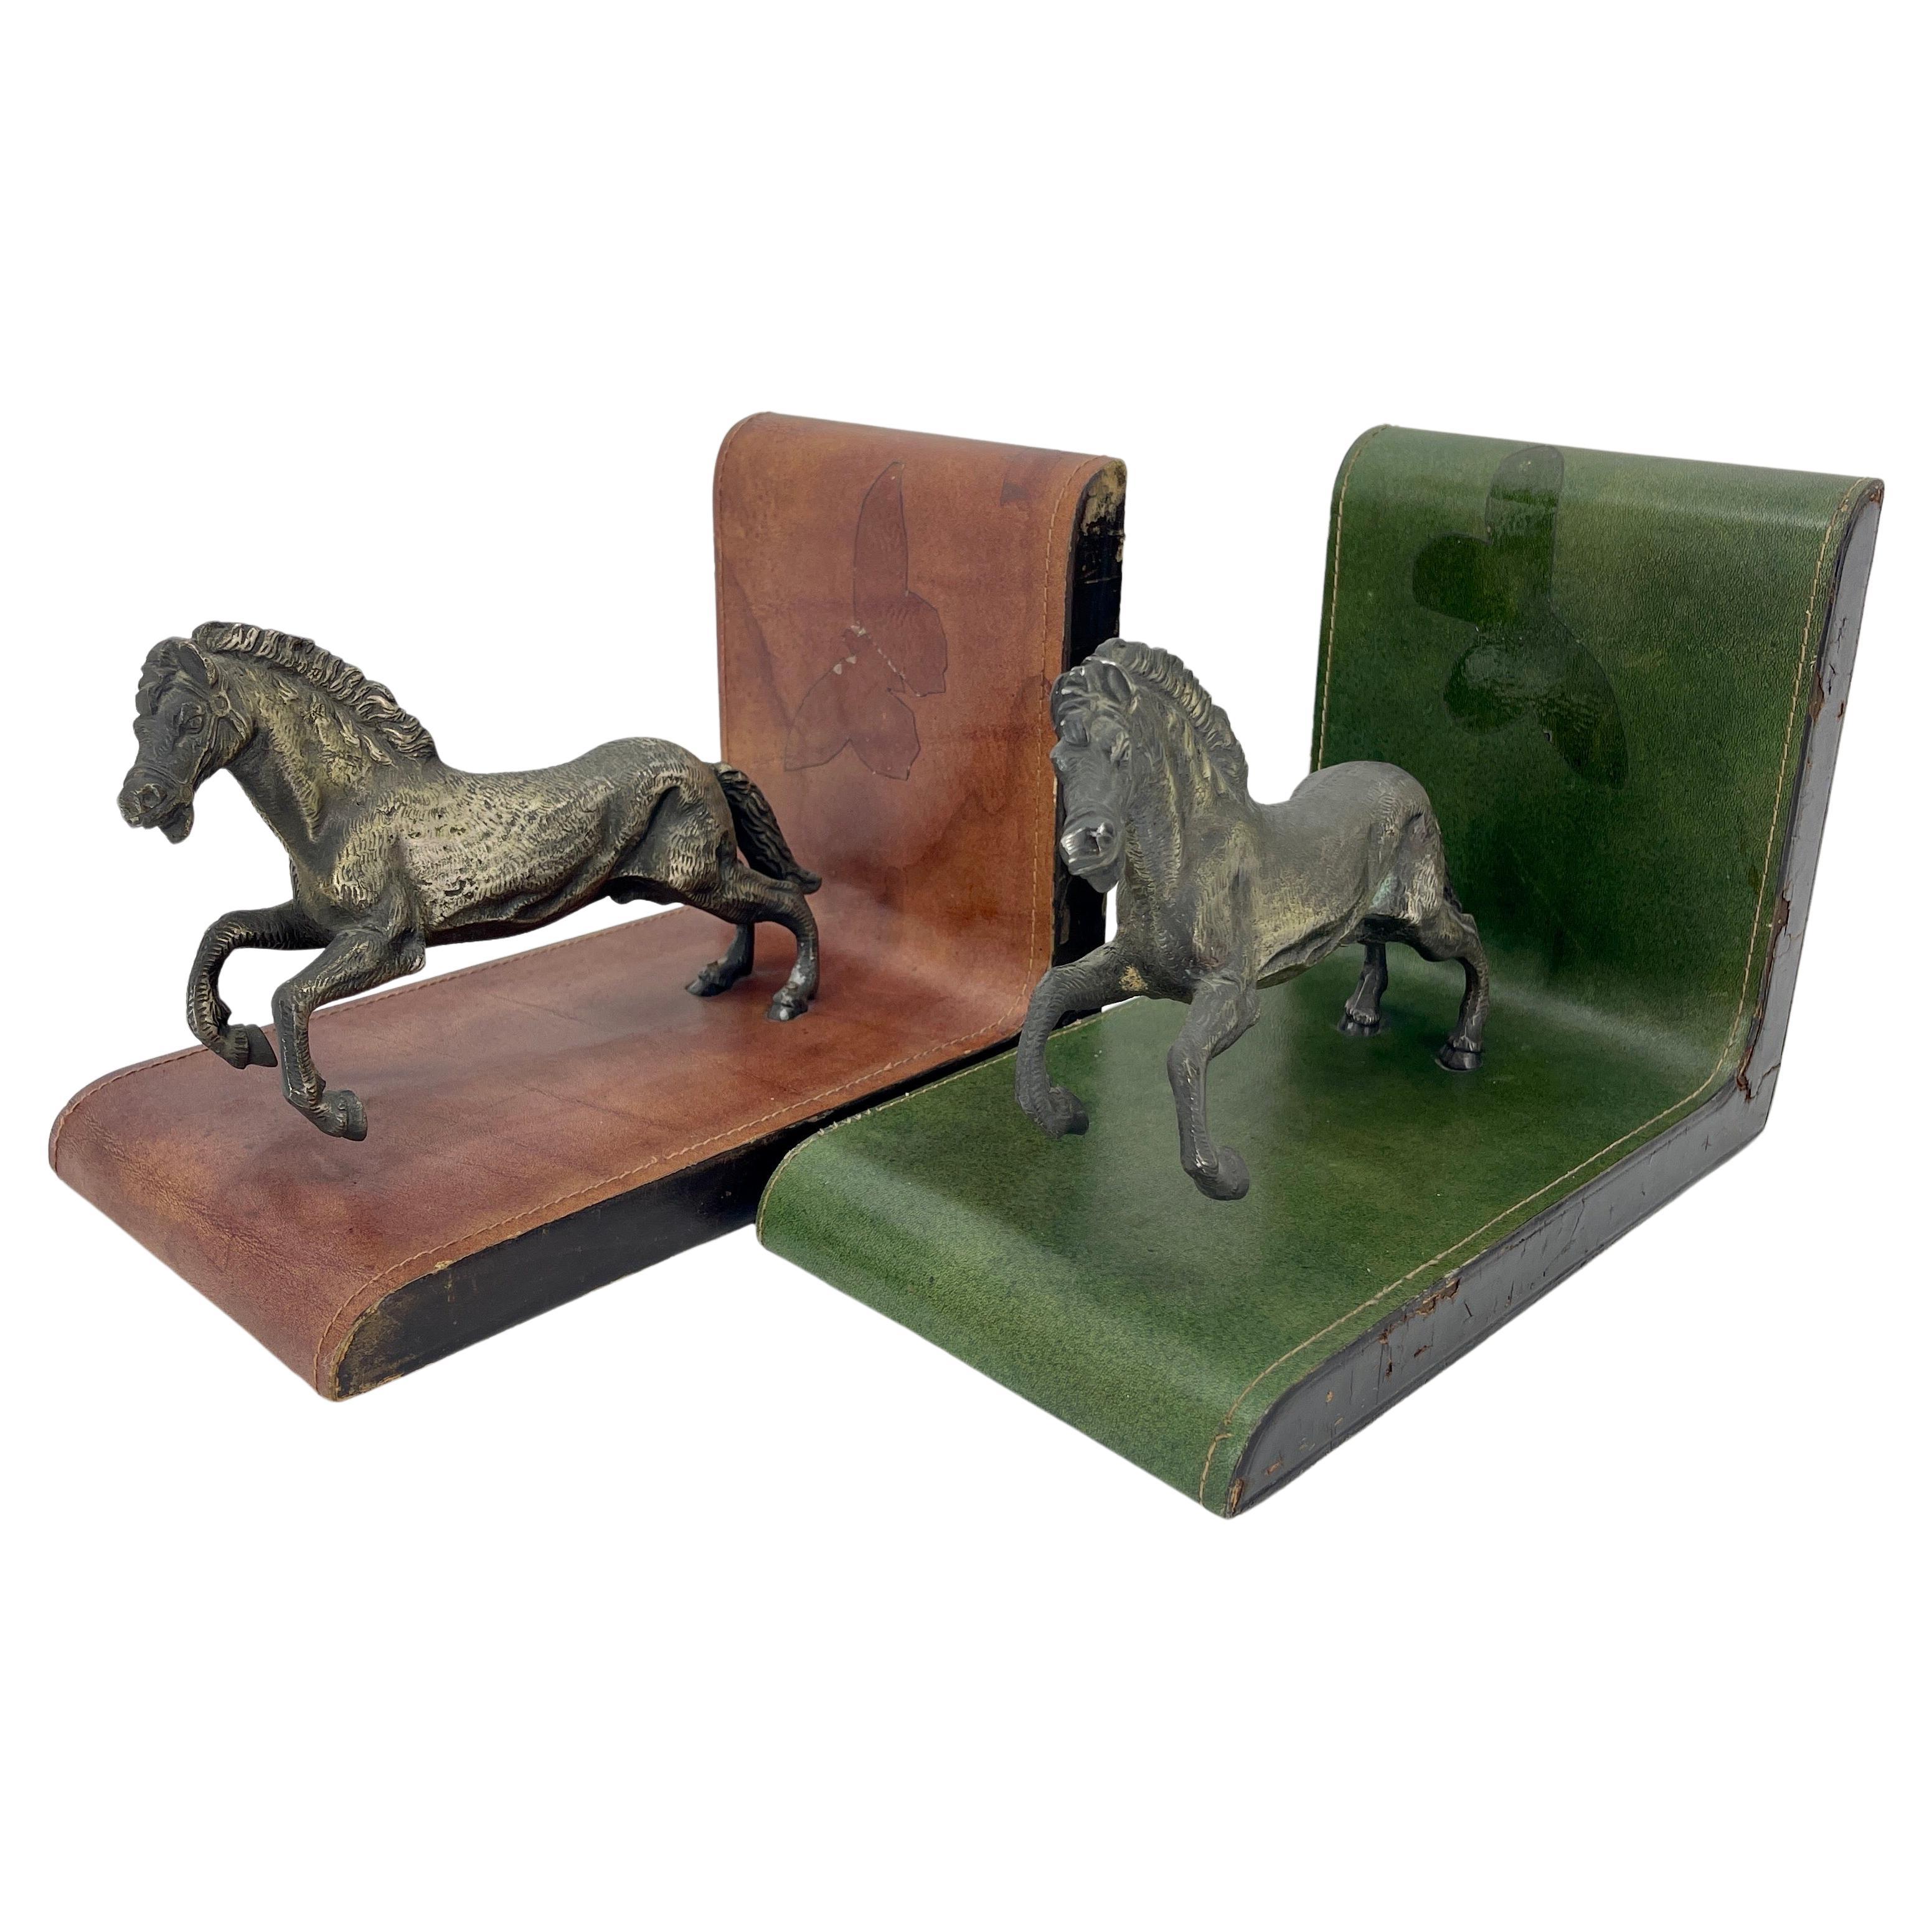 Extra großer Satz von Vintage Leder Buchstützen mit patiniert Bronze Pferde in voller Sprint, Italien CIRCA 1950's.
Eine Buchstütze ist aus rotem Leder und die andere aus grünem Leder. Die Patina des Leders und der Bronze zeigt die einzigartige